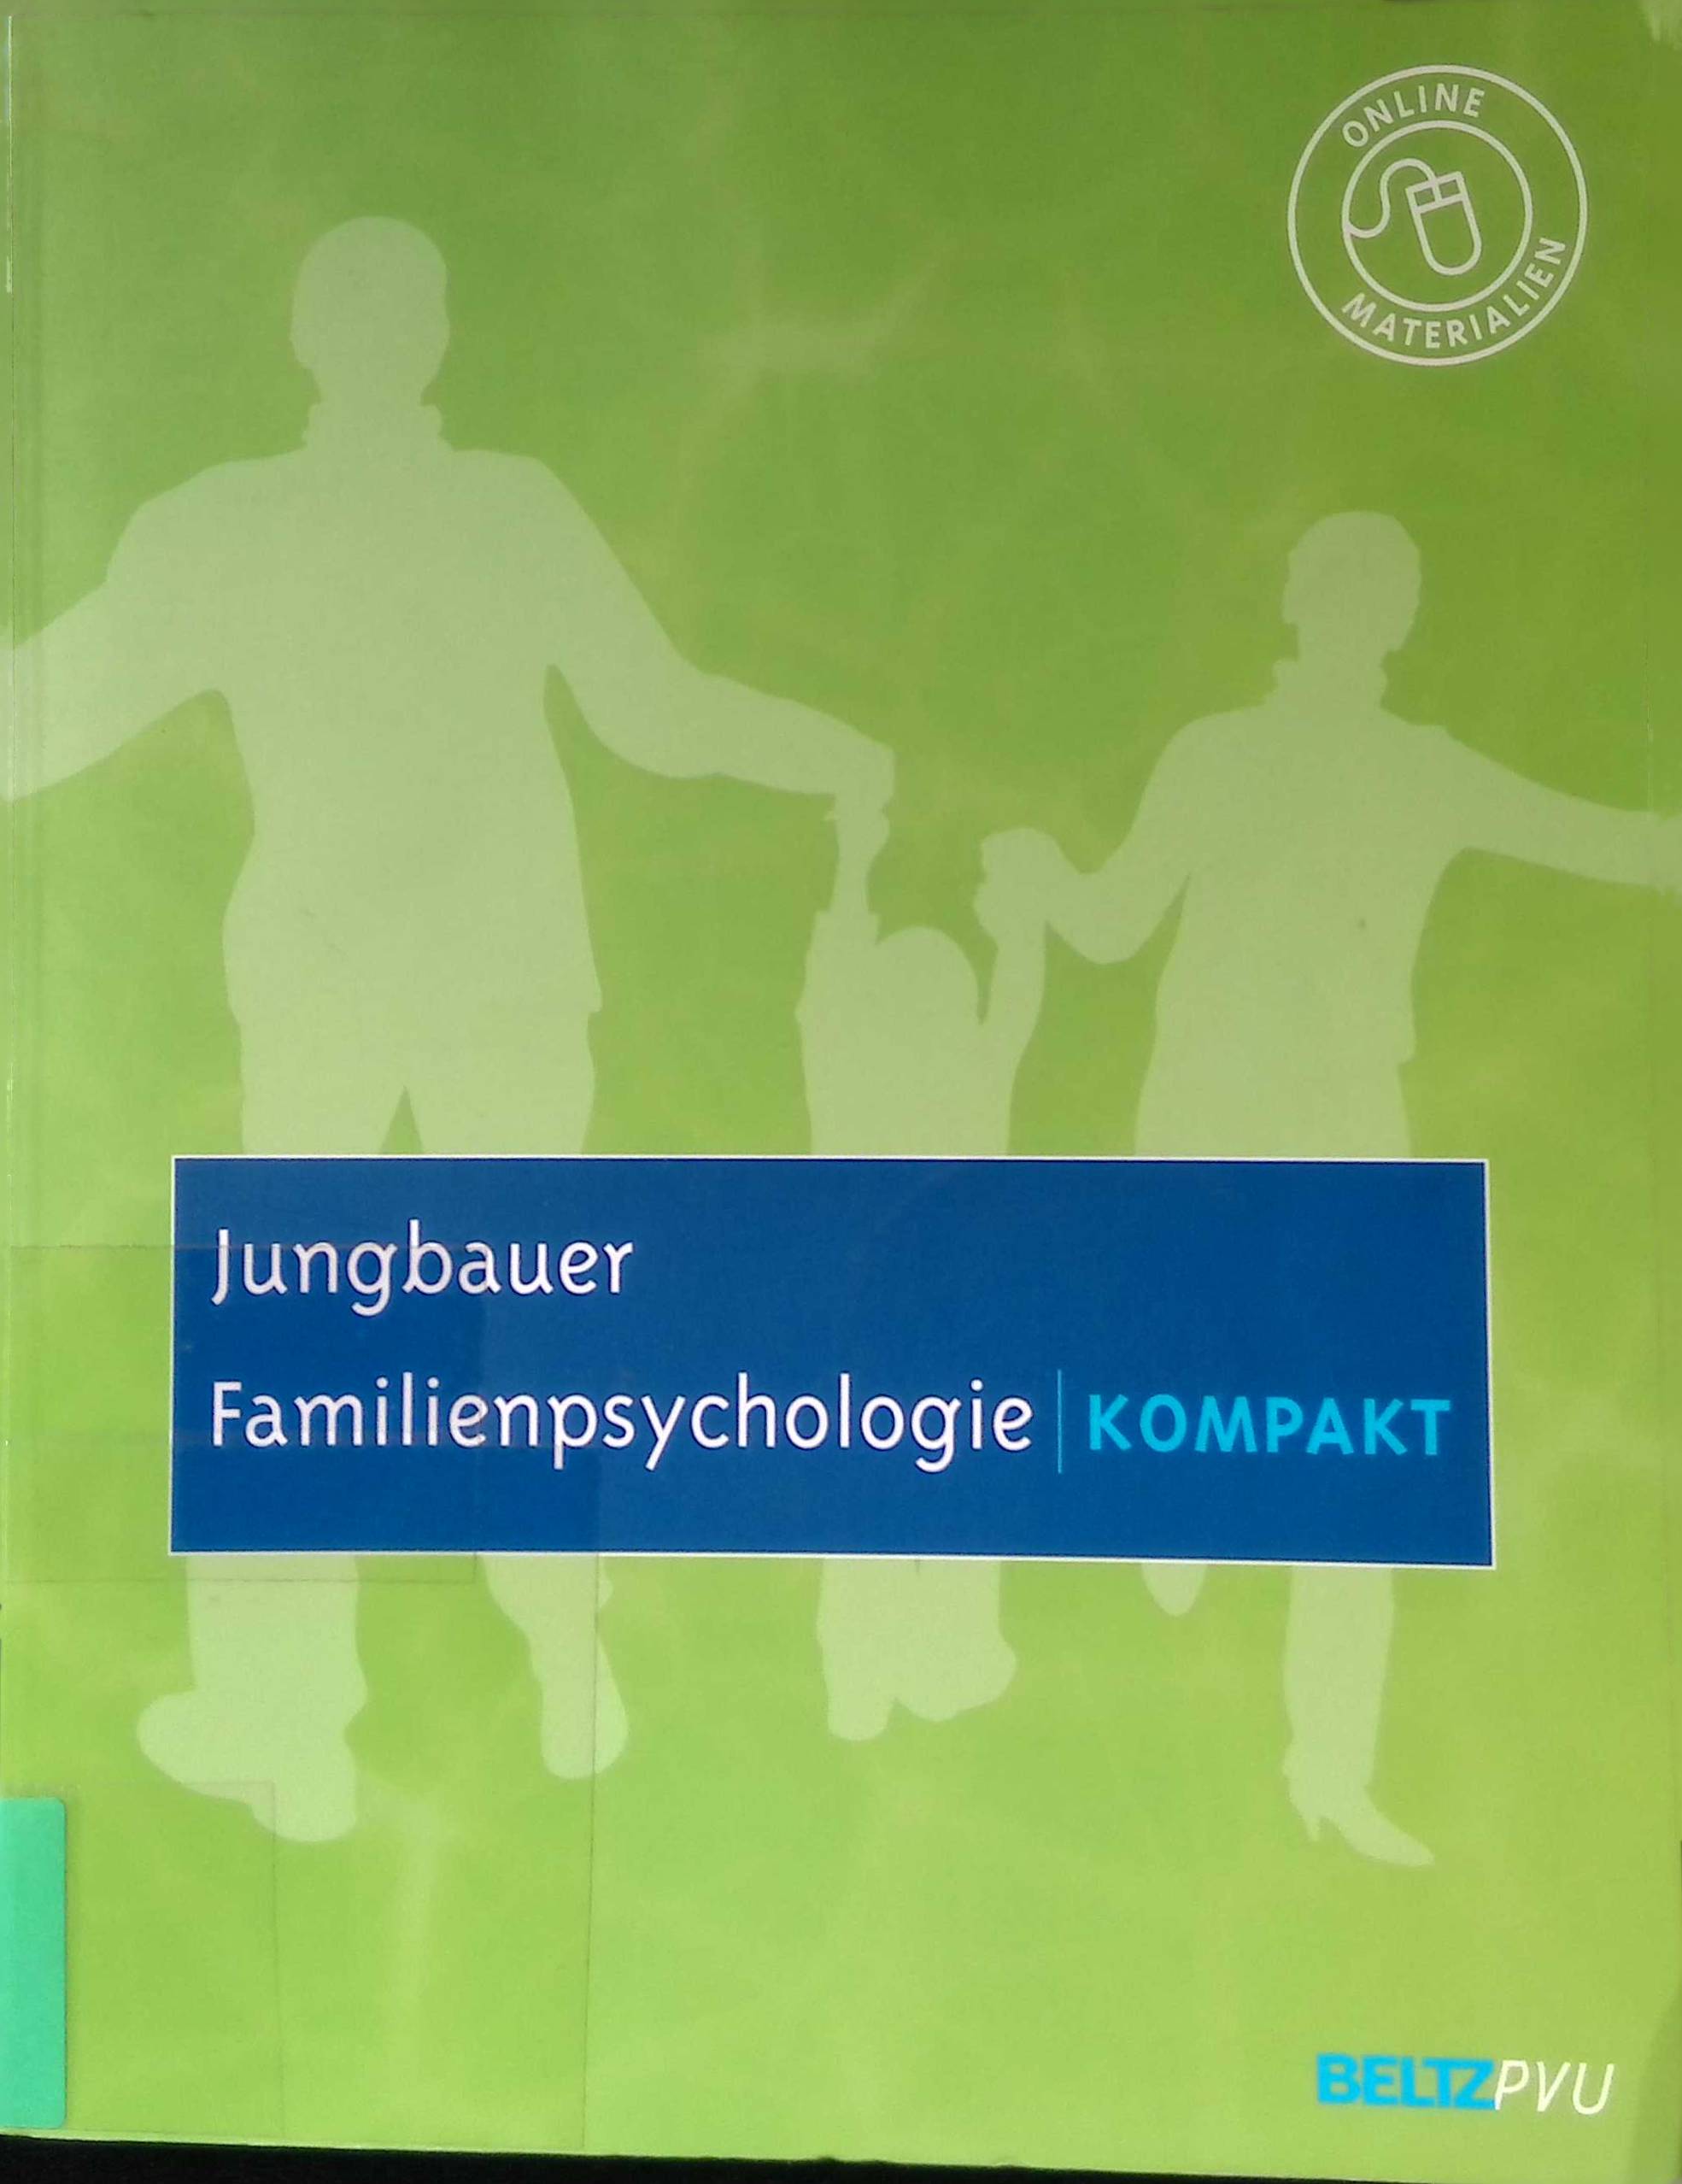 Familienpsychologie kompakt. - Jungbauer, Johannes